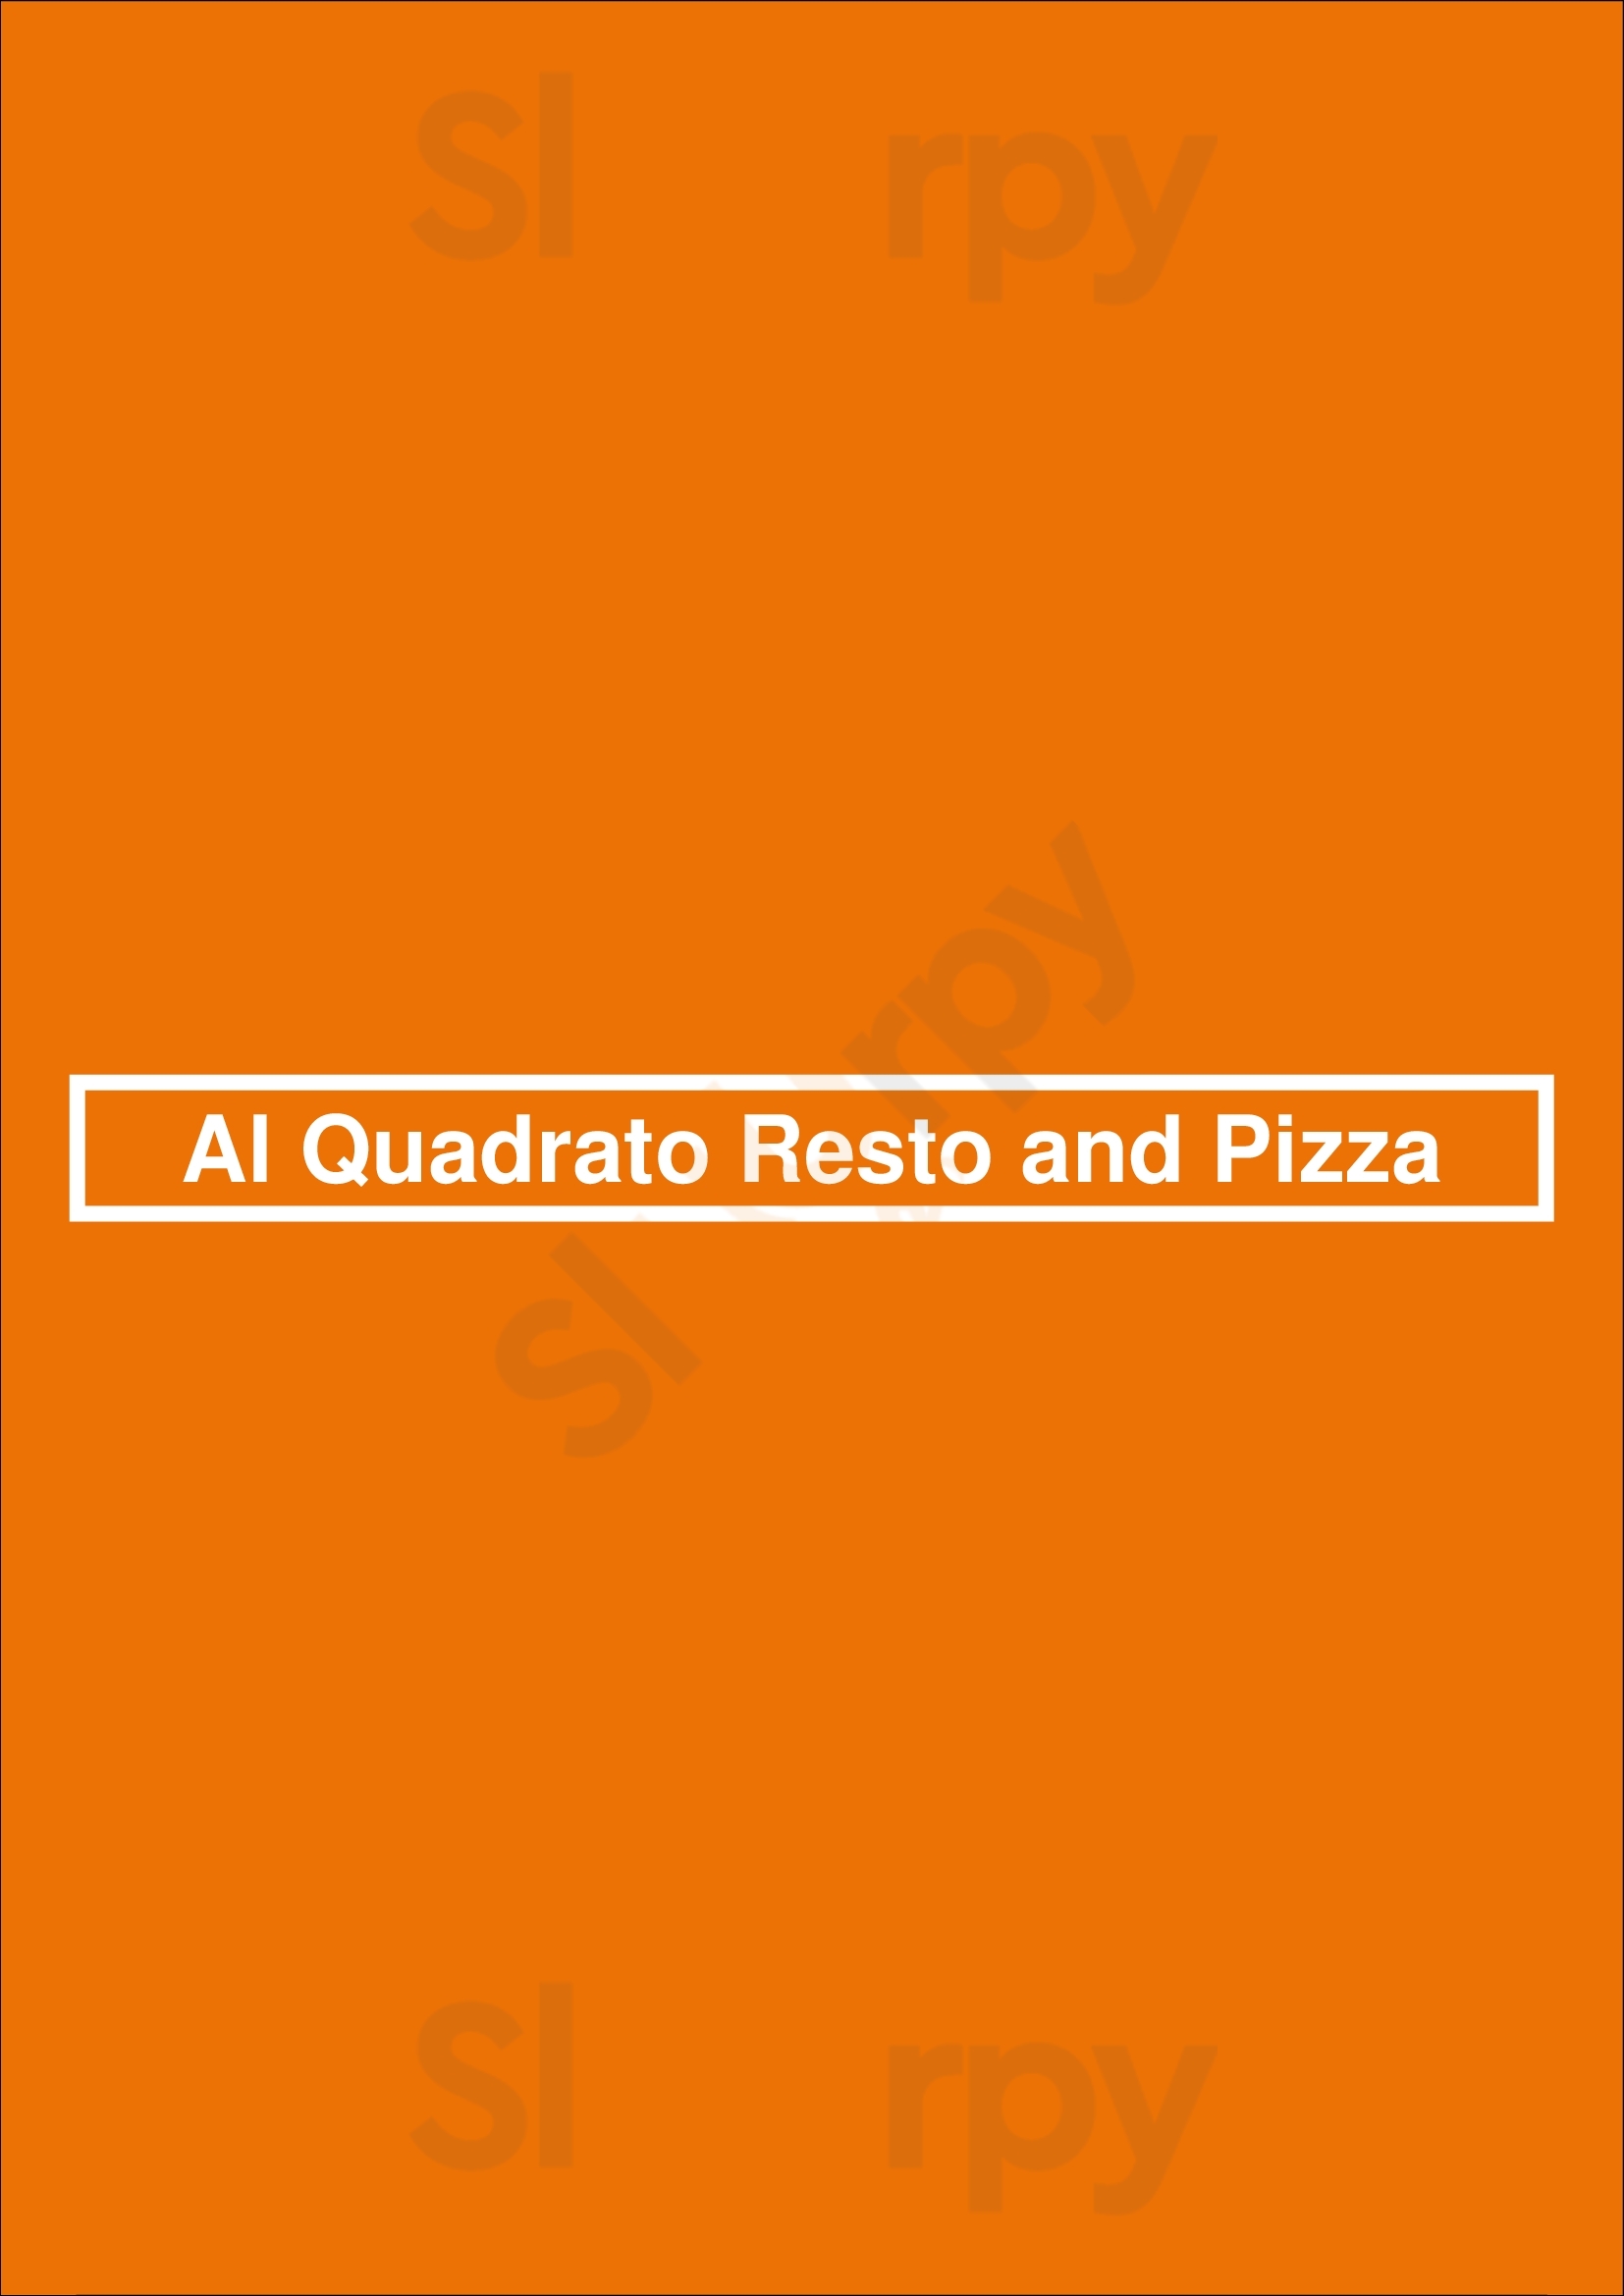 Al Quadrato Resto And Pizza Ottawa Menu - 1